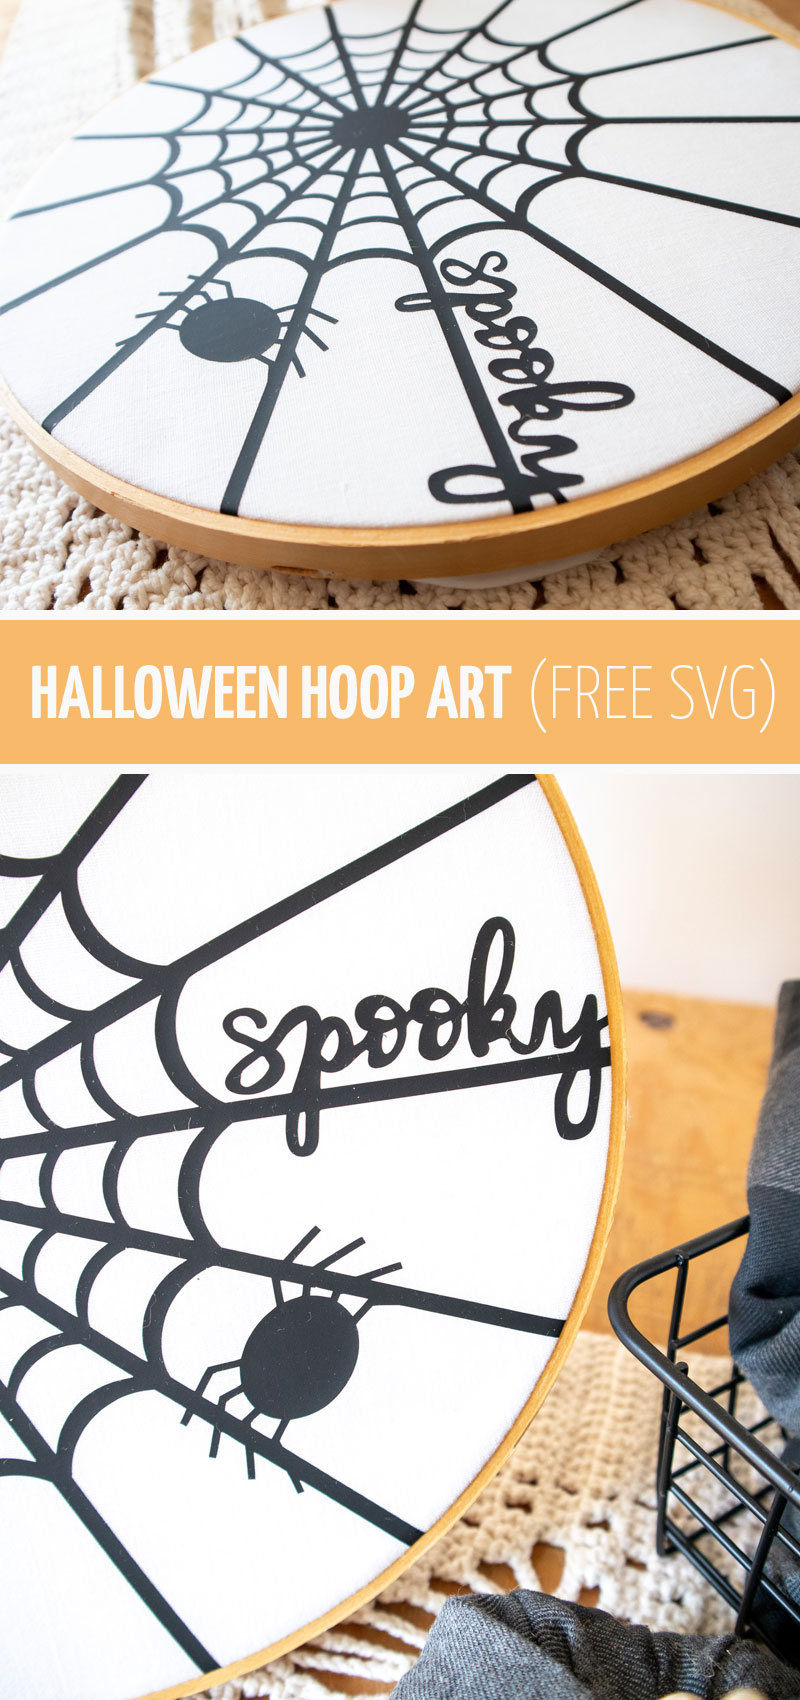 Halloween cricut craft - hoop art - free svg